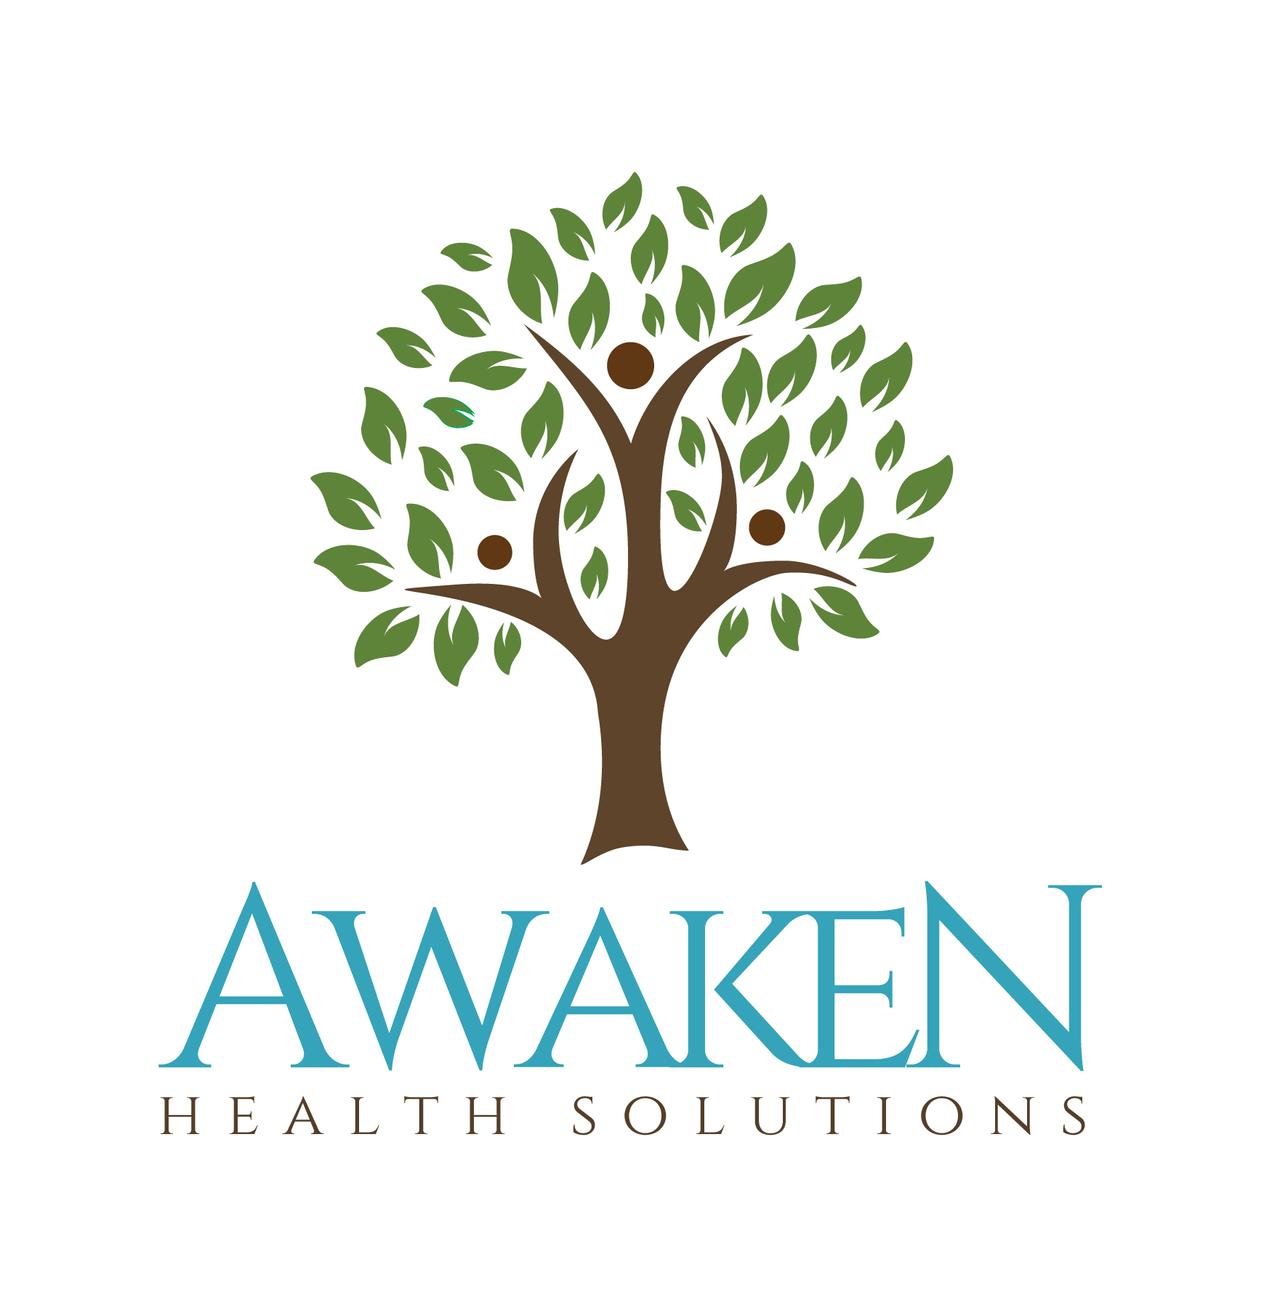 Awaken Health Solutions